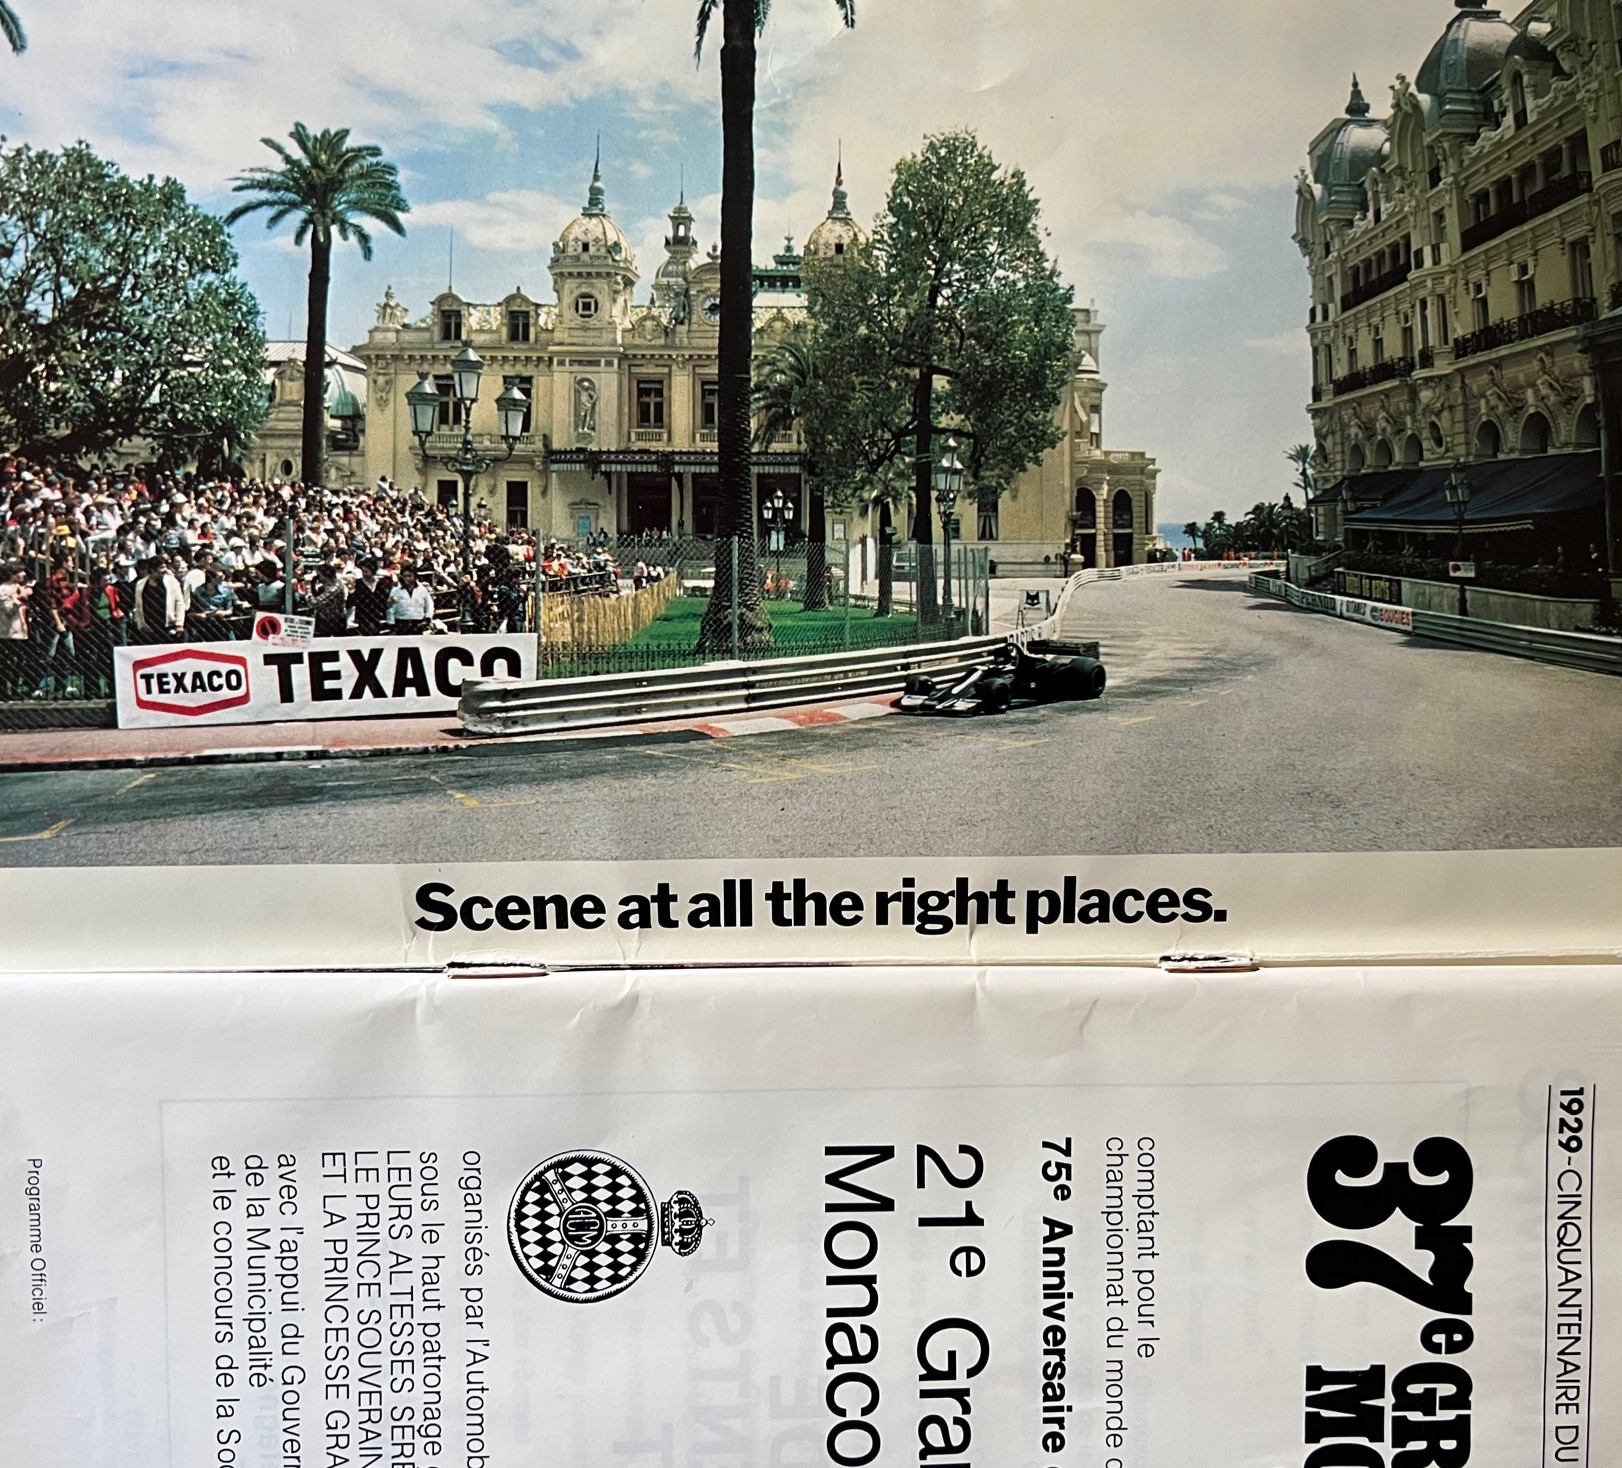 Monaco GP 1979, Petersons gåva till pole position (foto), program, 16x24 cm